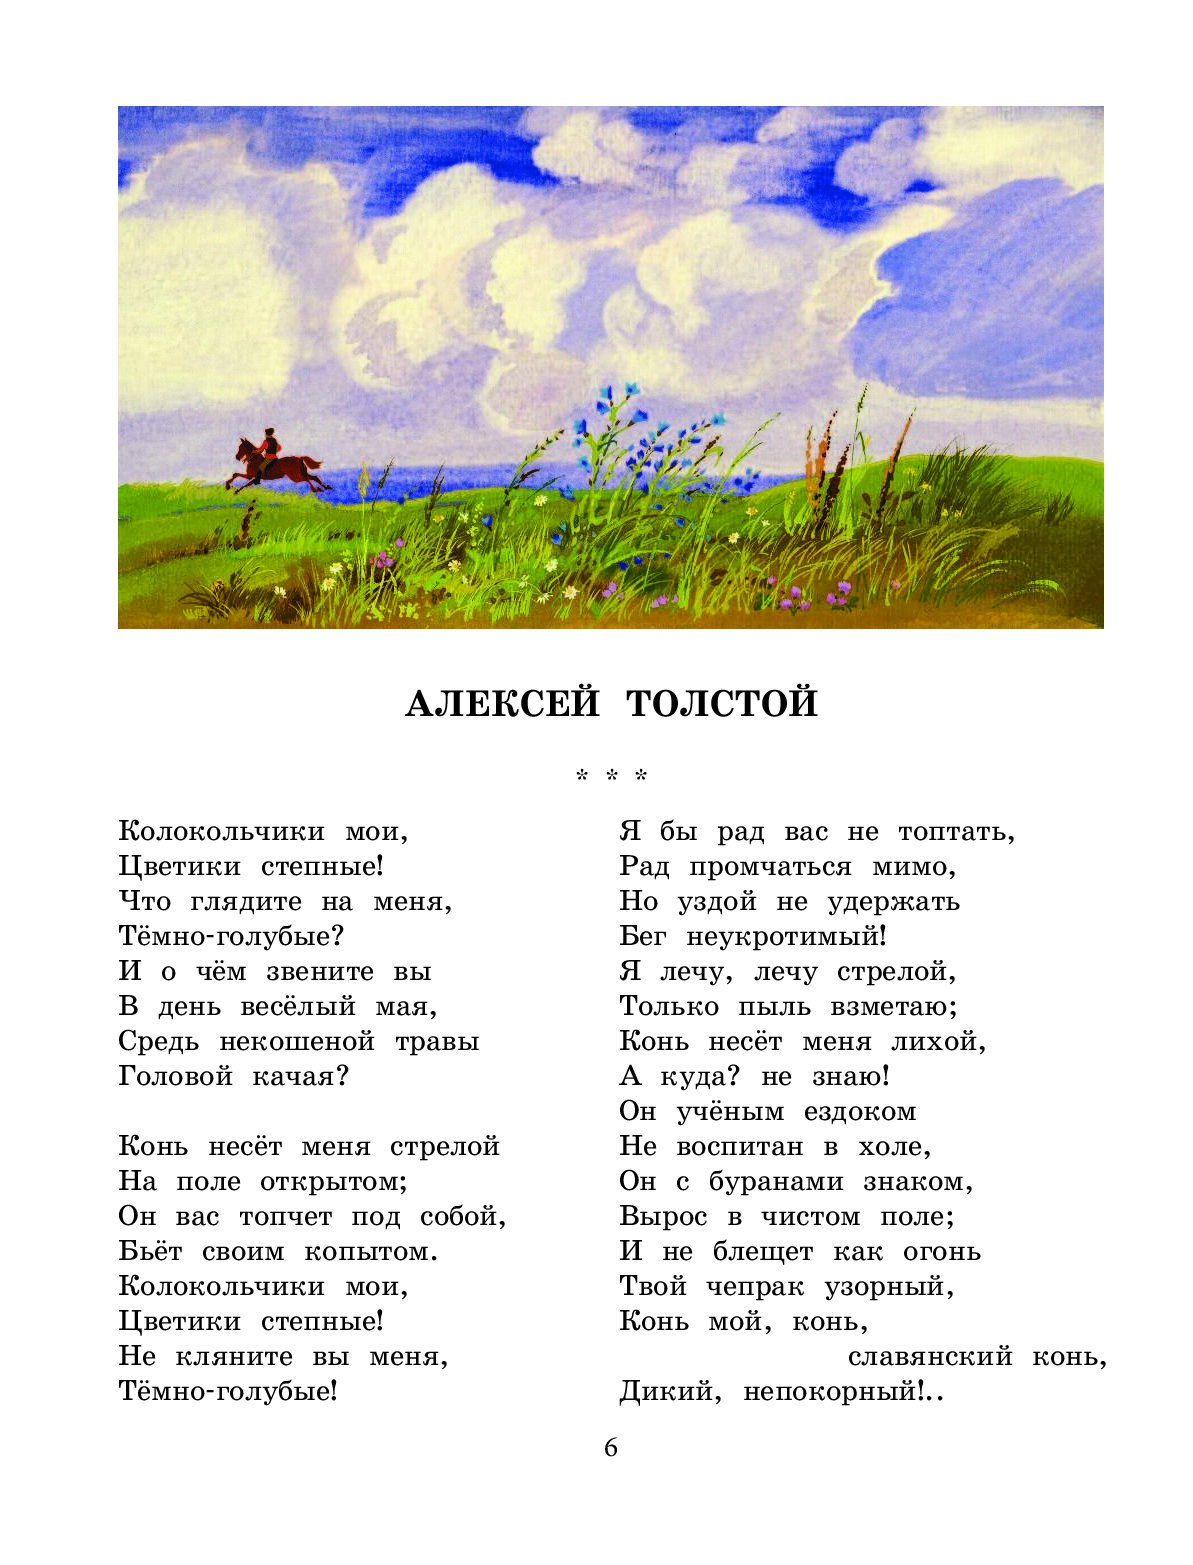 Стихотворение о русской природе